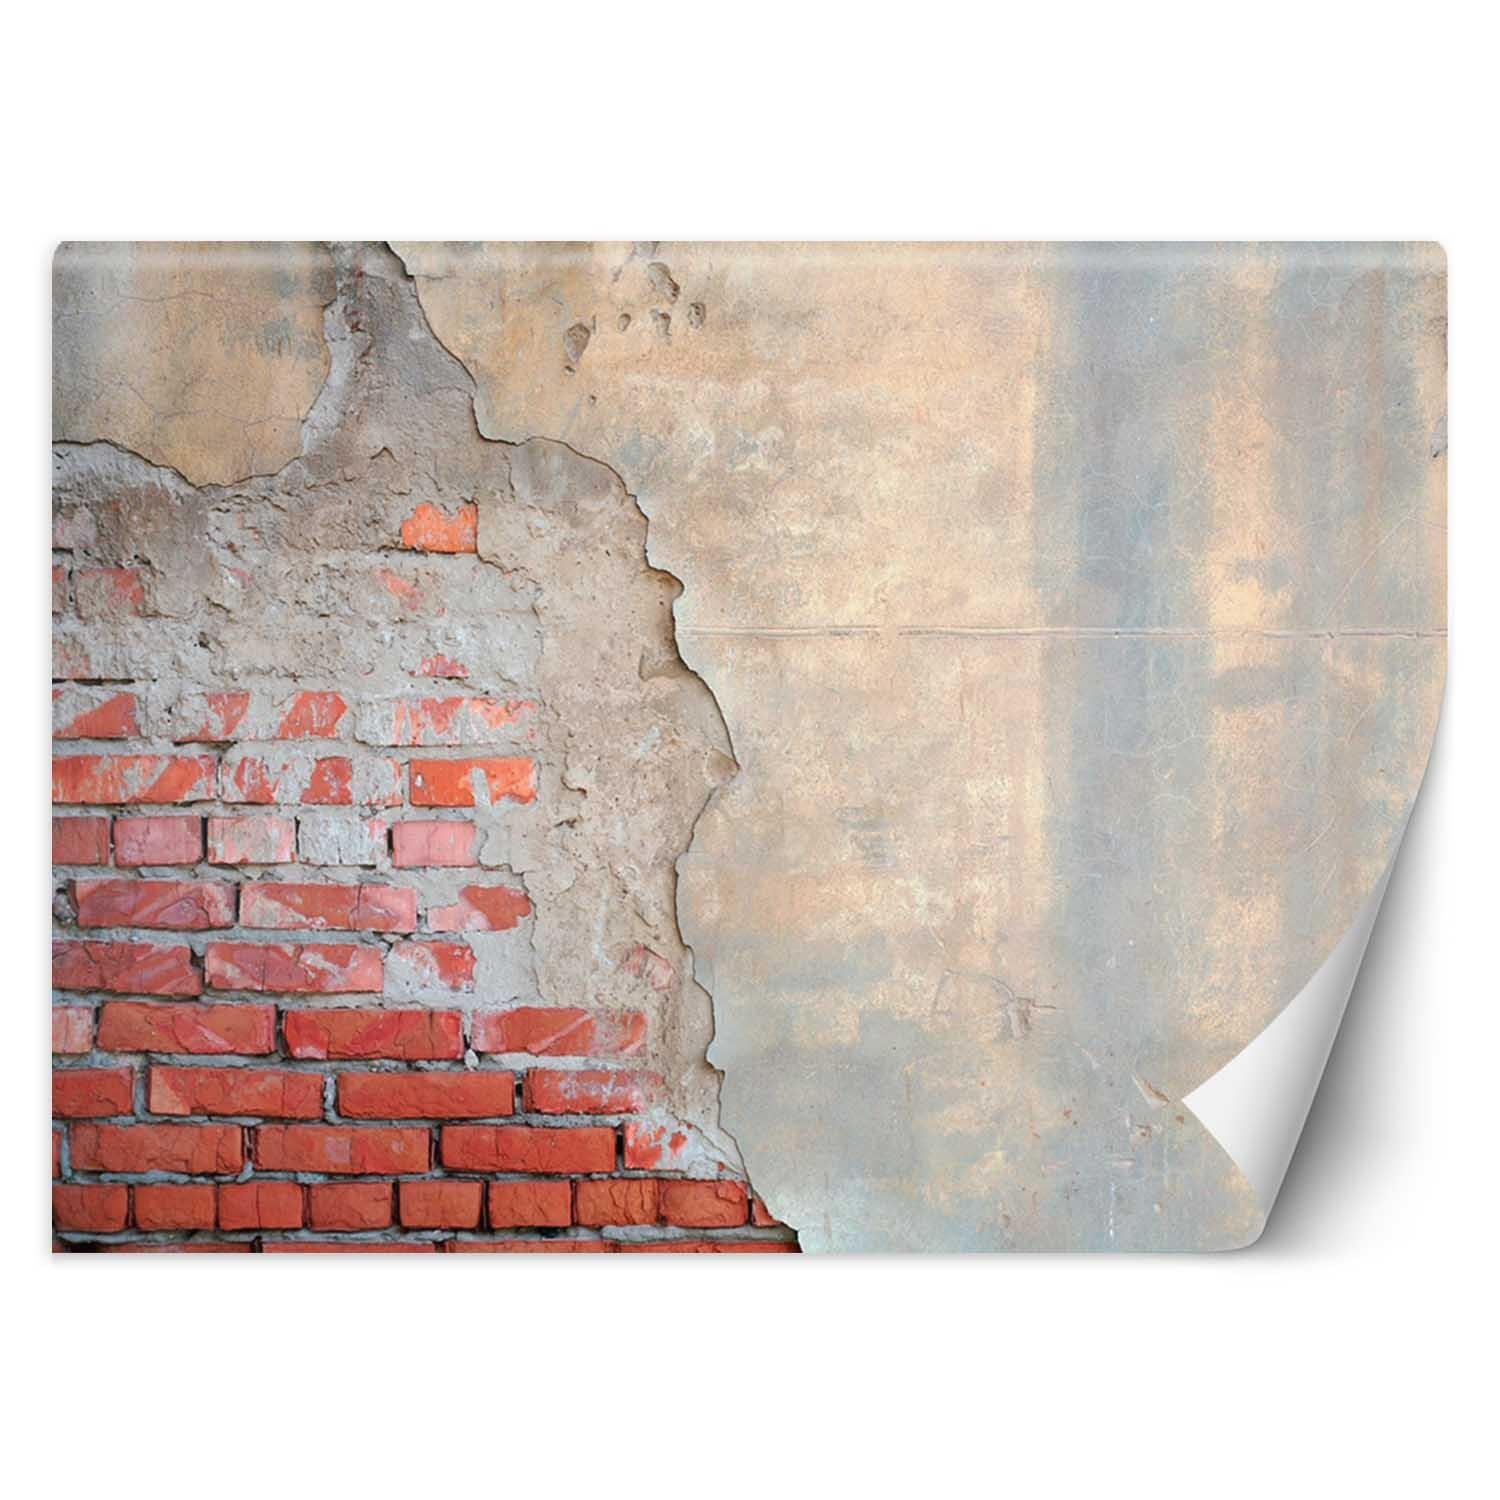 Trend24 – Behang – Bakstenen Muur – Behangpapier – Behang Woonkamer – Fotobehang – 250x175x2 cm – Incl. behanglijm